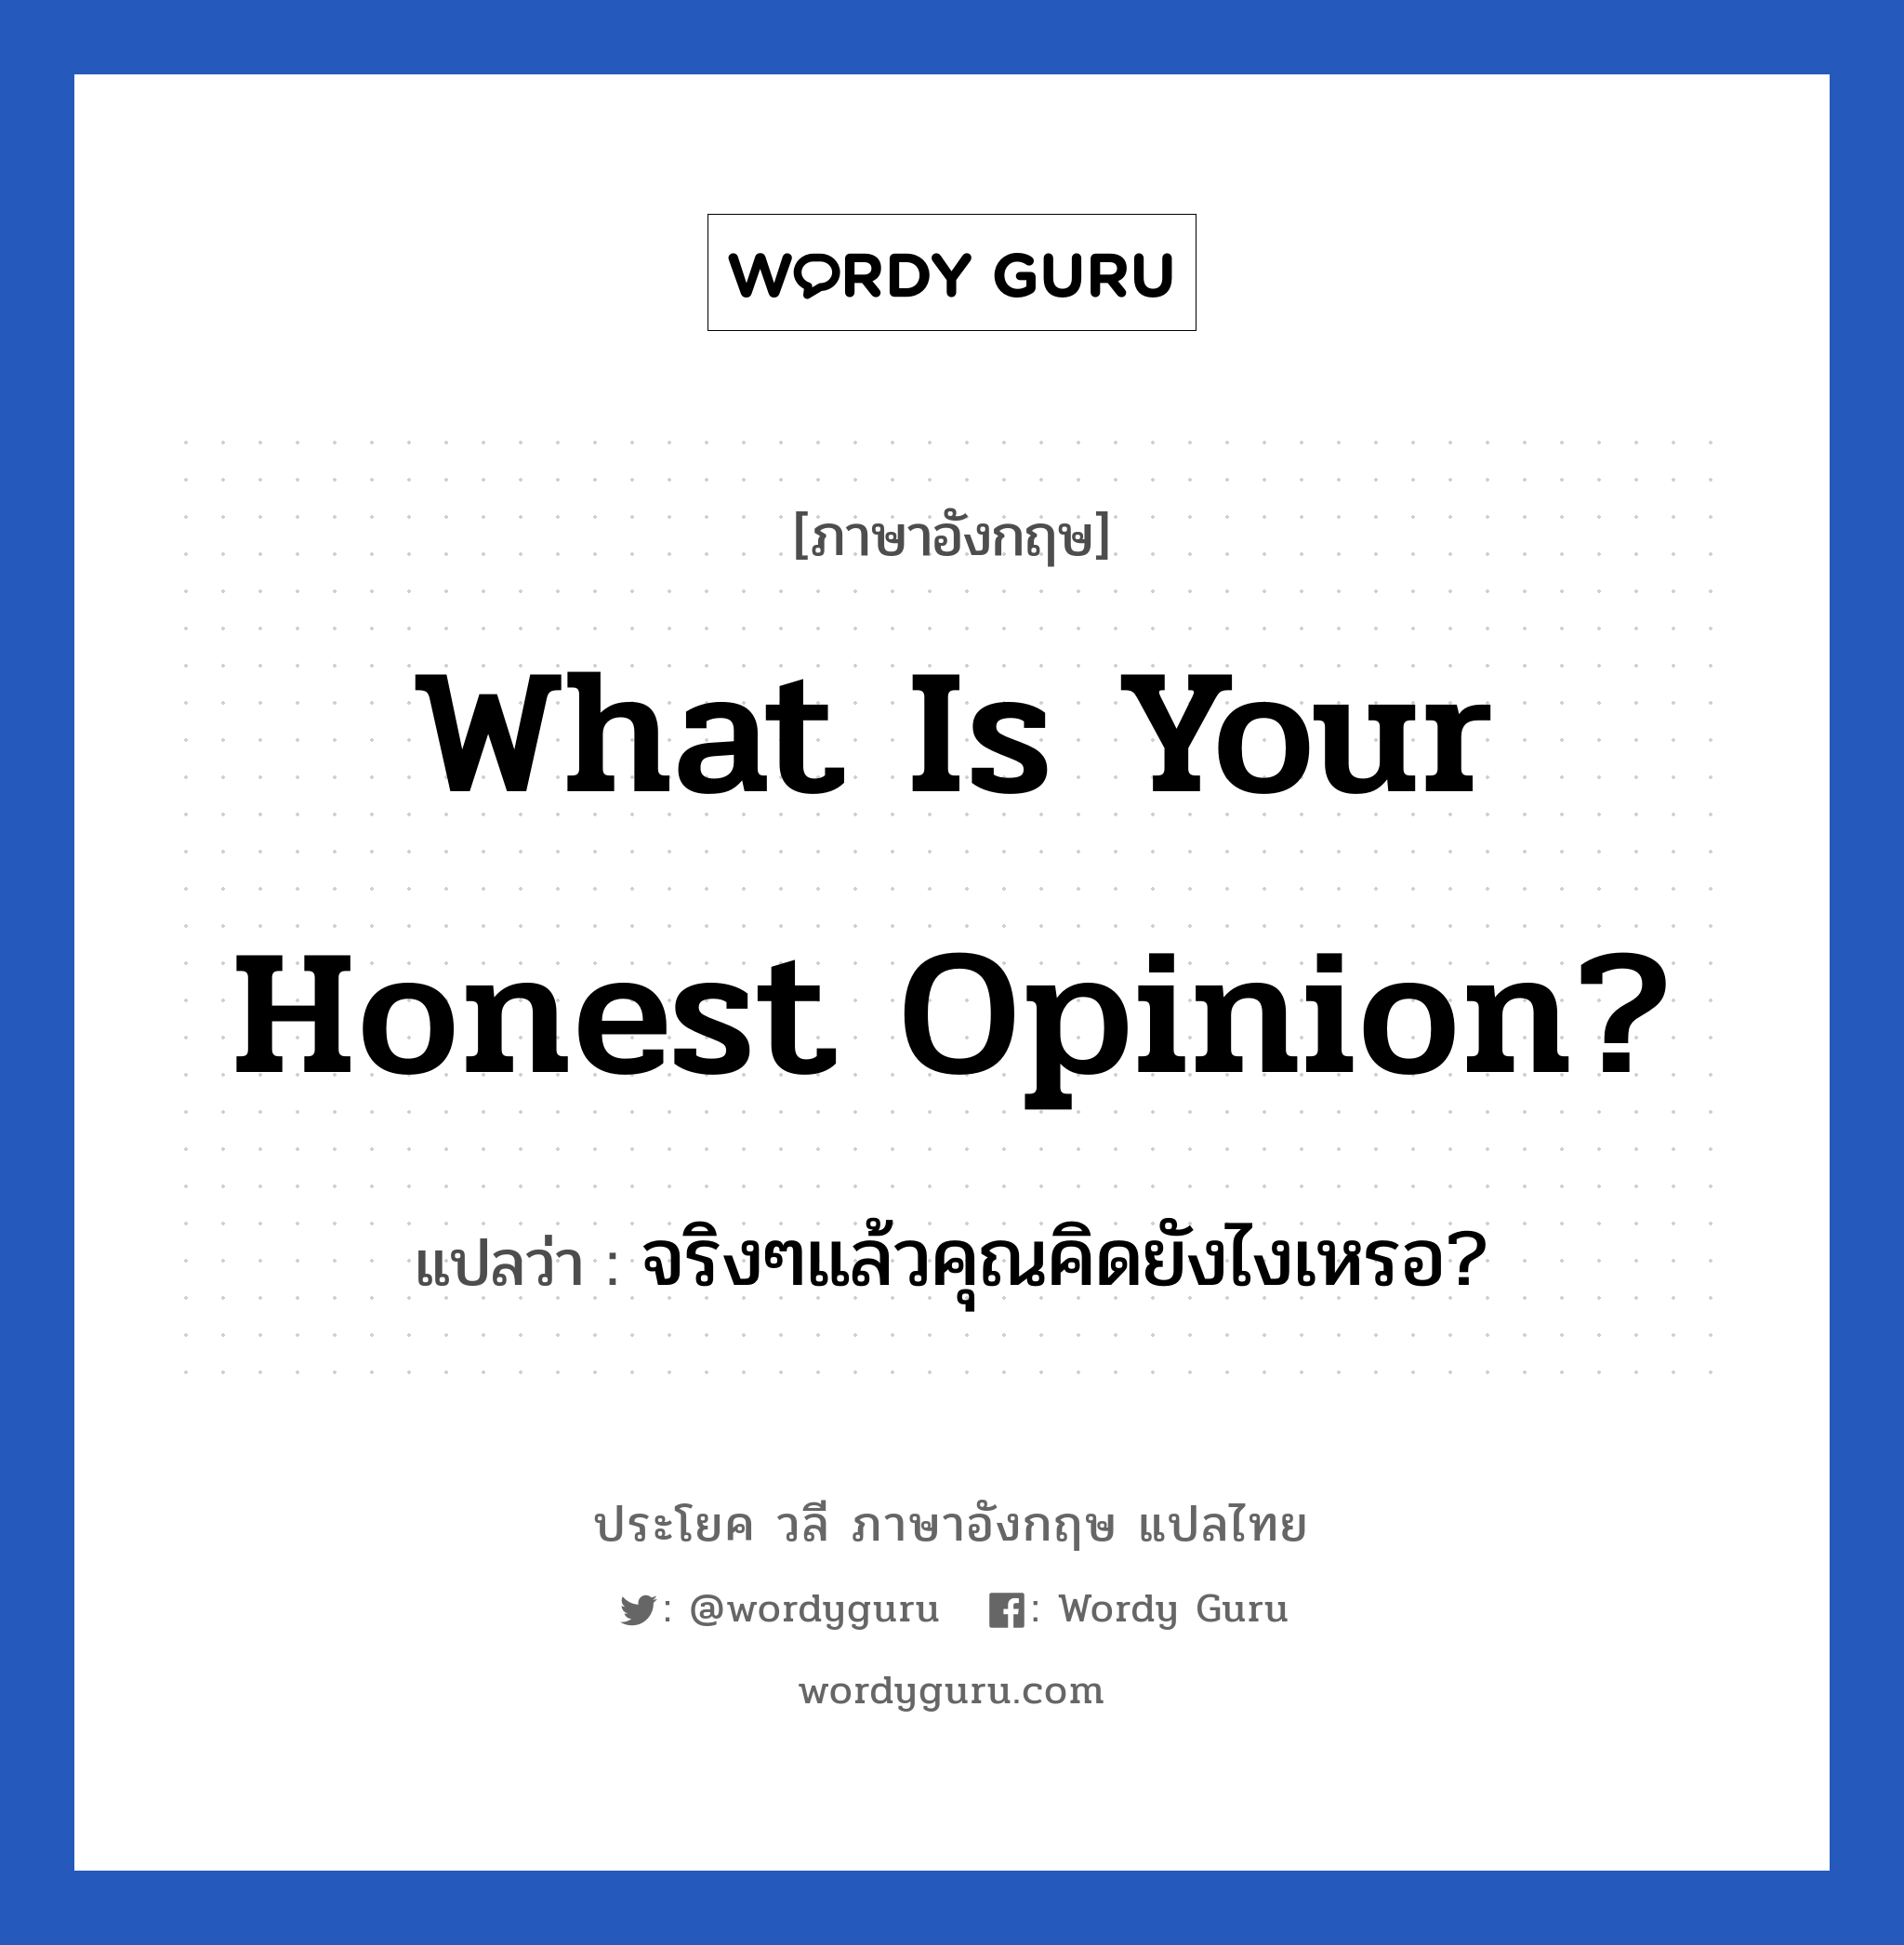 จริงๆแล้วคุณคิดยังไงเหรอ? ภาษาอังกฤษ?, วลีภาษาอังกฤษ จริงๆแล้วคุณคิดยังไงเหรอ? แปลว่า What is your honest opinion?